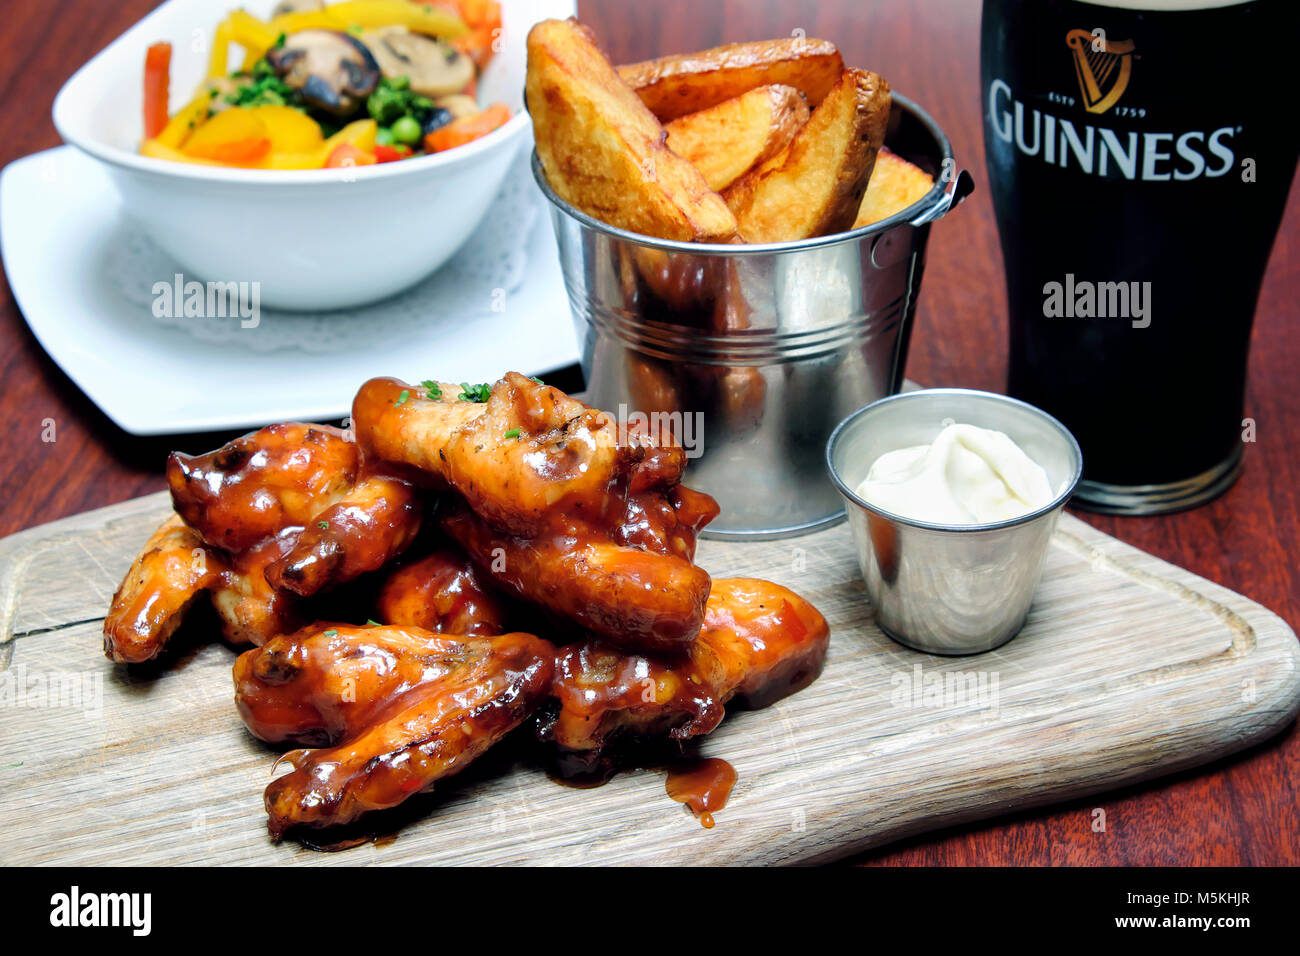 Des ailes de poulet sautées dans barbecue et sauce chili douce servi avec trempette au fromage bleu, frites et une pinte de Guinness, Doheny & Nesbitt Pub, Dublin, Irlande Banque D'Images